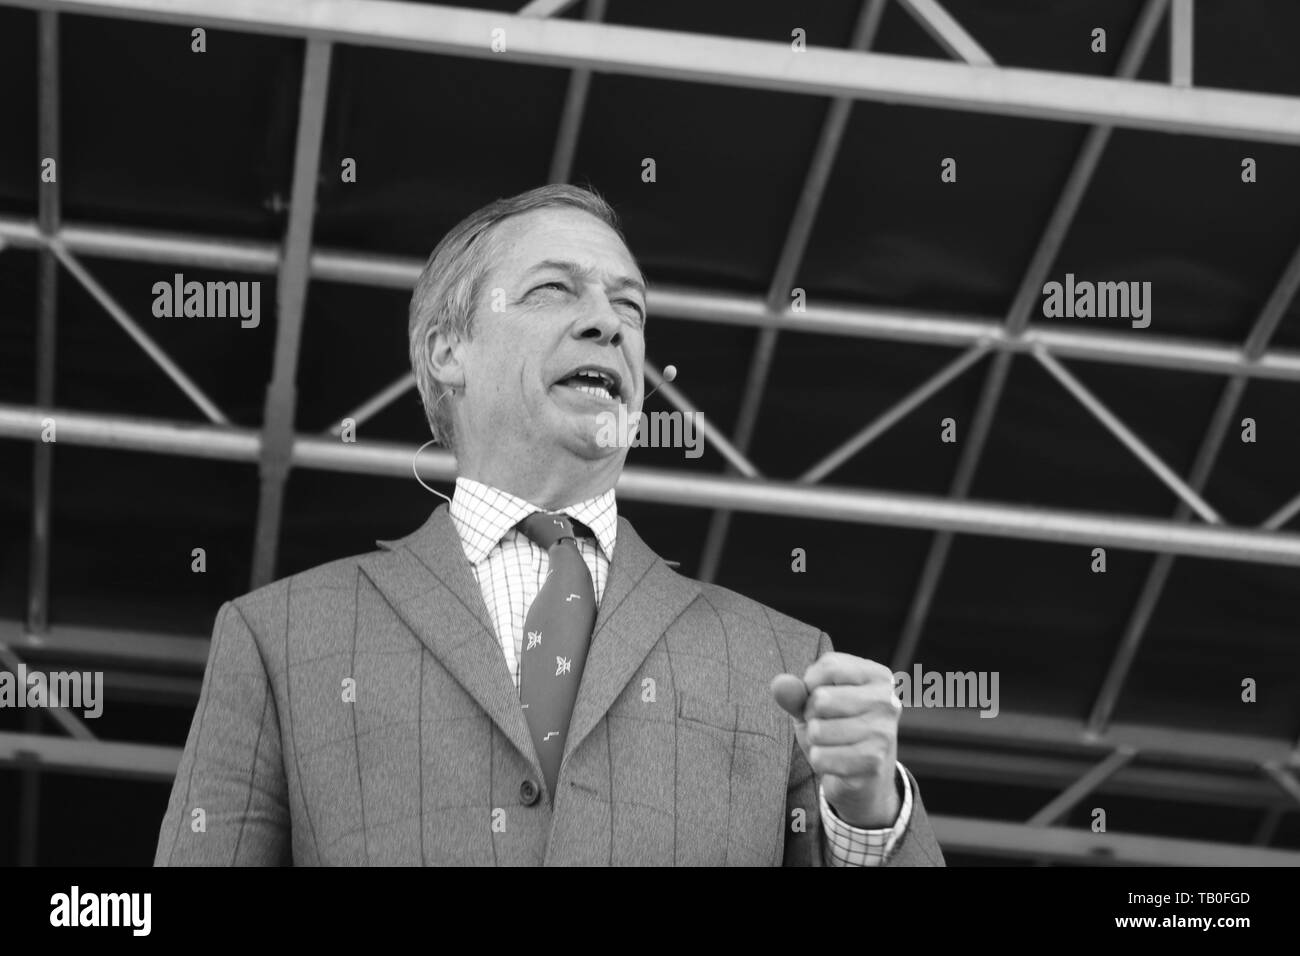 Brexit-Chef Nigel Farage Teilnahme an der Kundgebung auf dem alten Hall Country Club Chester GROSSBRITANNIEN Stockfoto